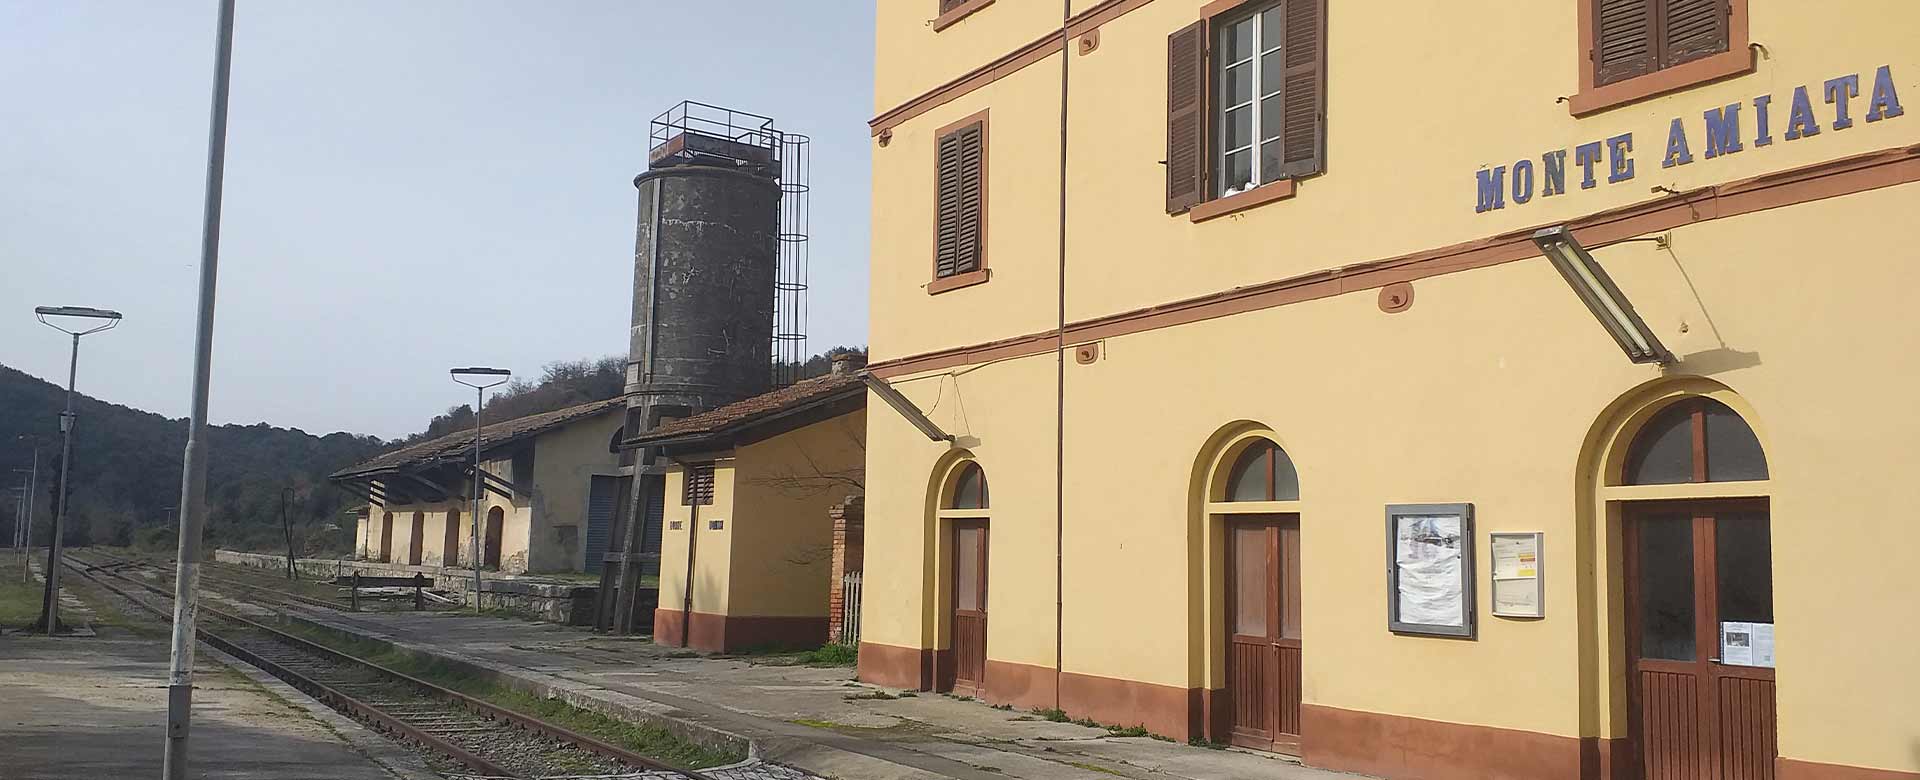 La stazione di Monte Amiata in provincia di Siena